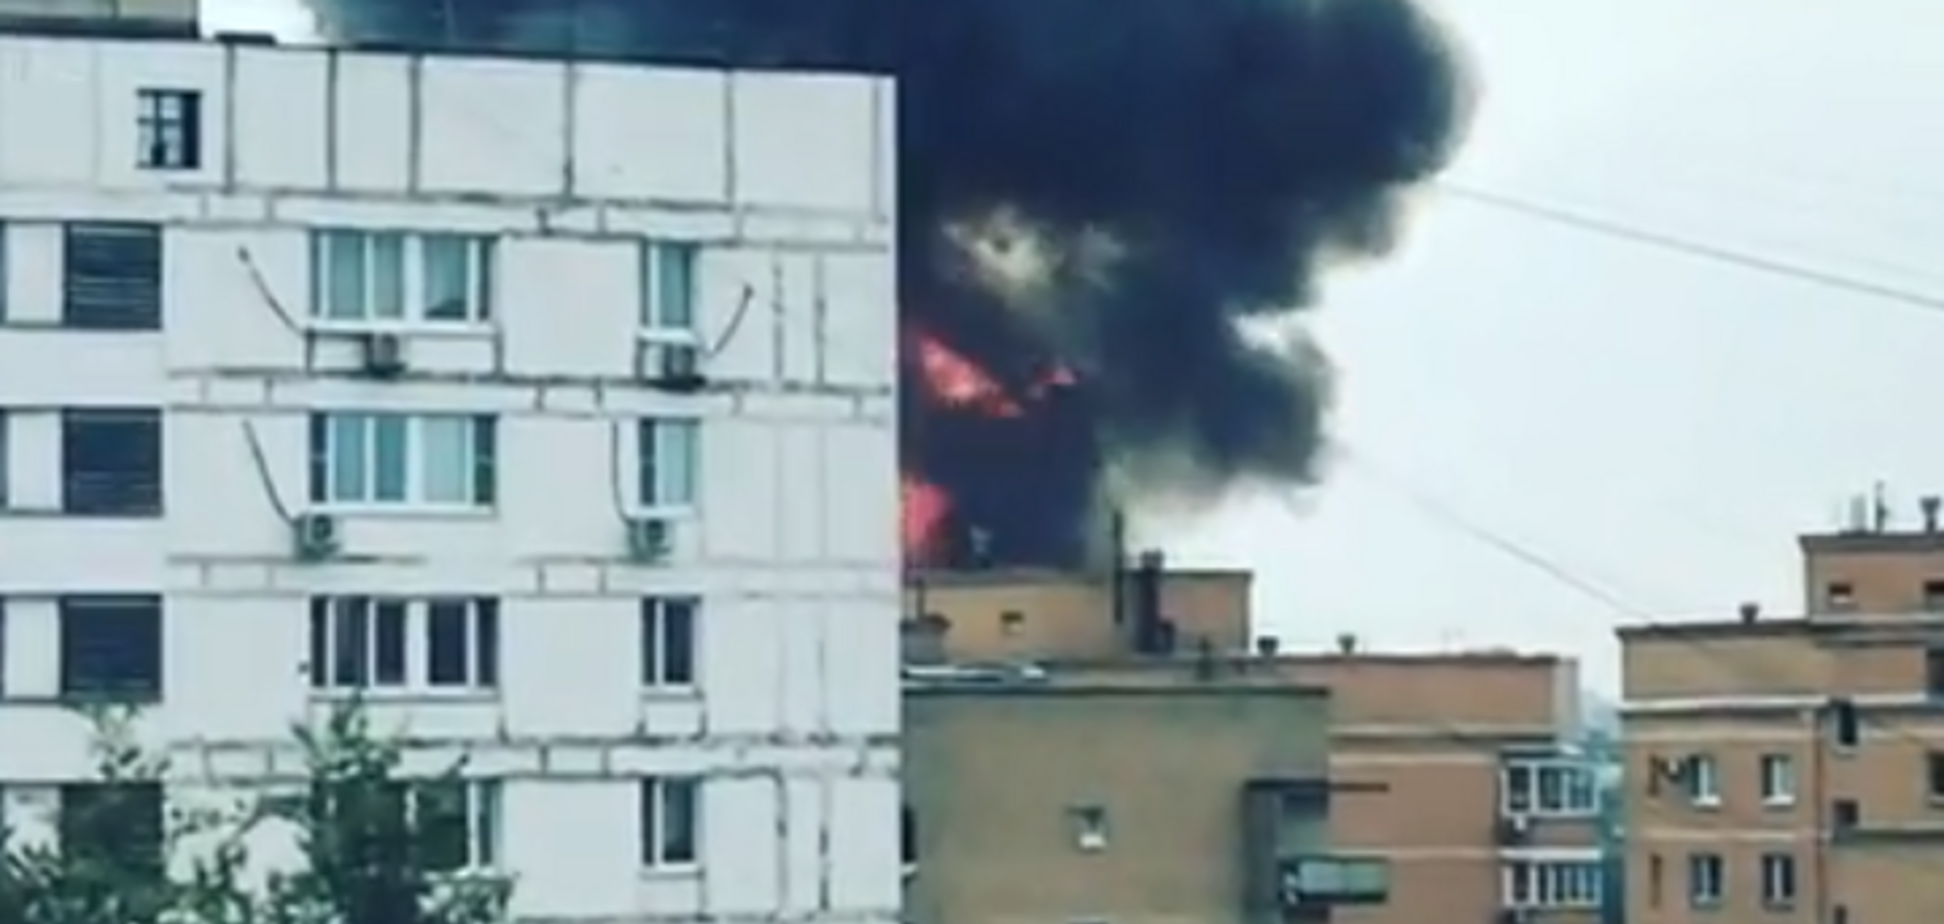 Авіація не справляється: у центрі Москви спалахнула масштабна пожежа. Фото і відео